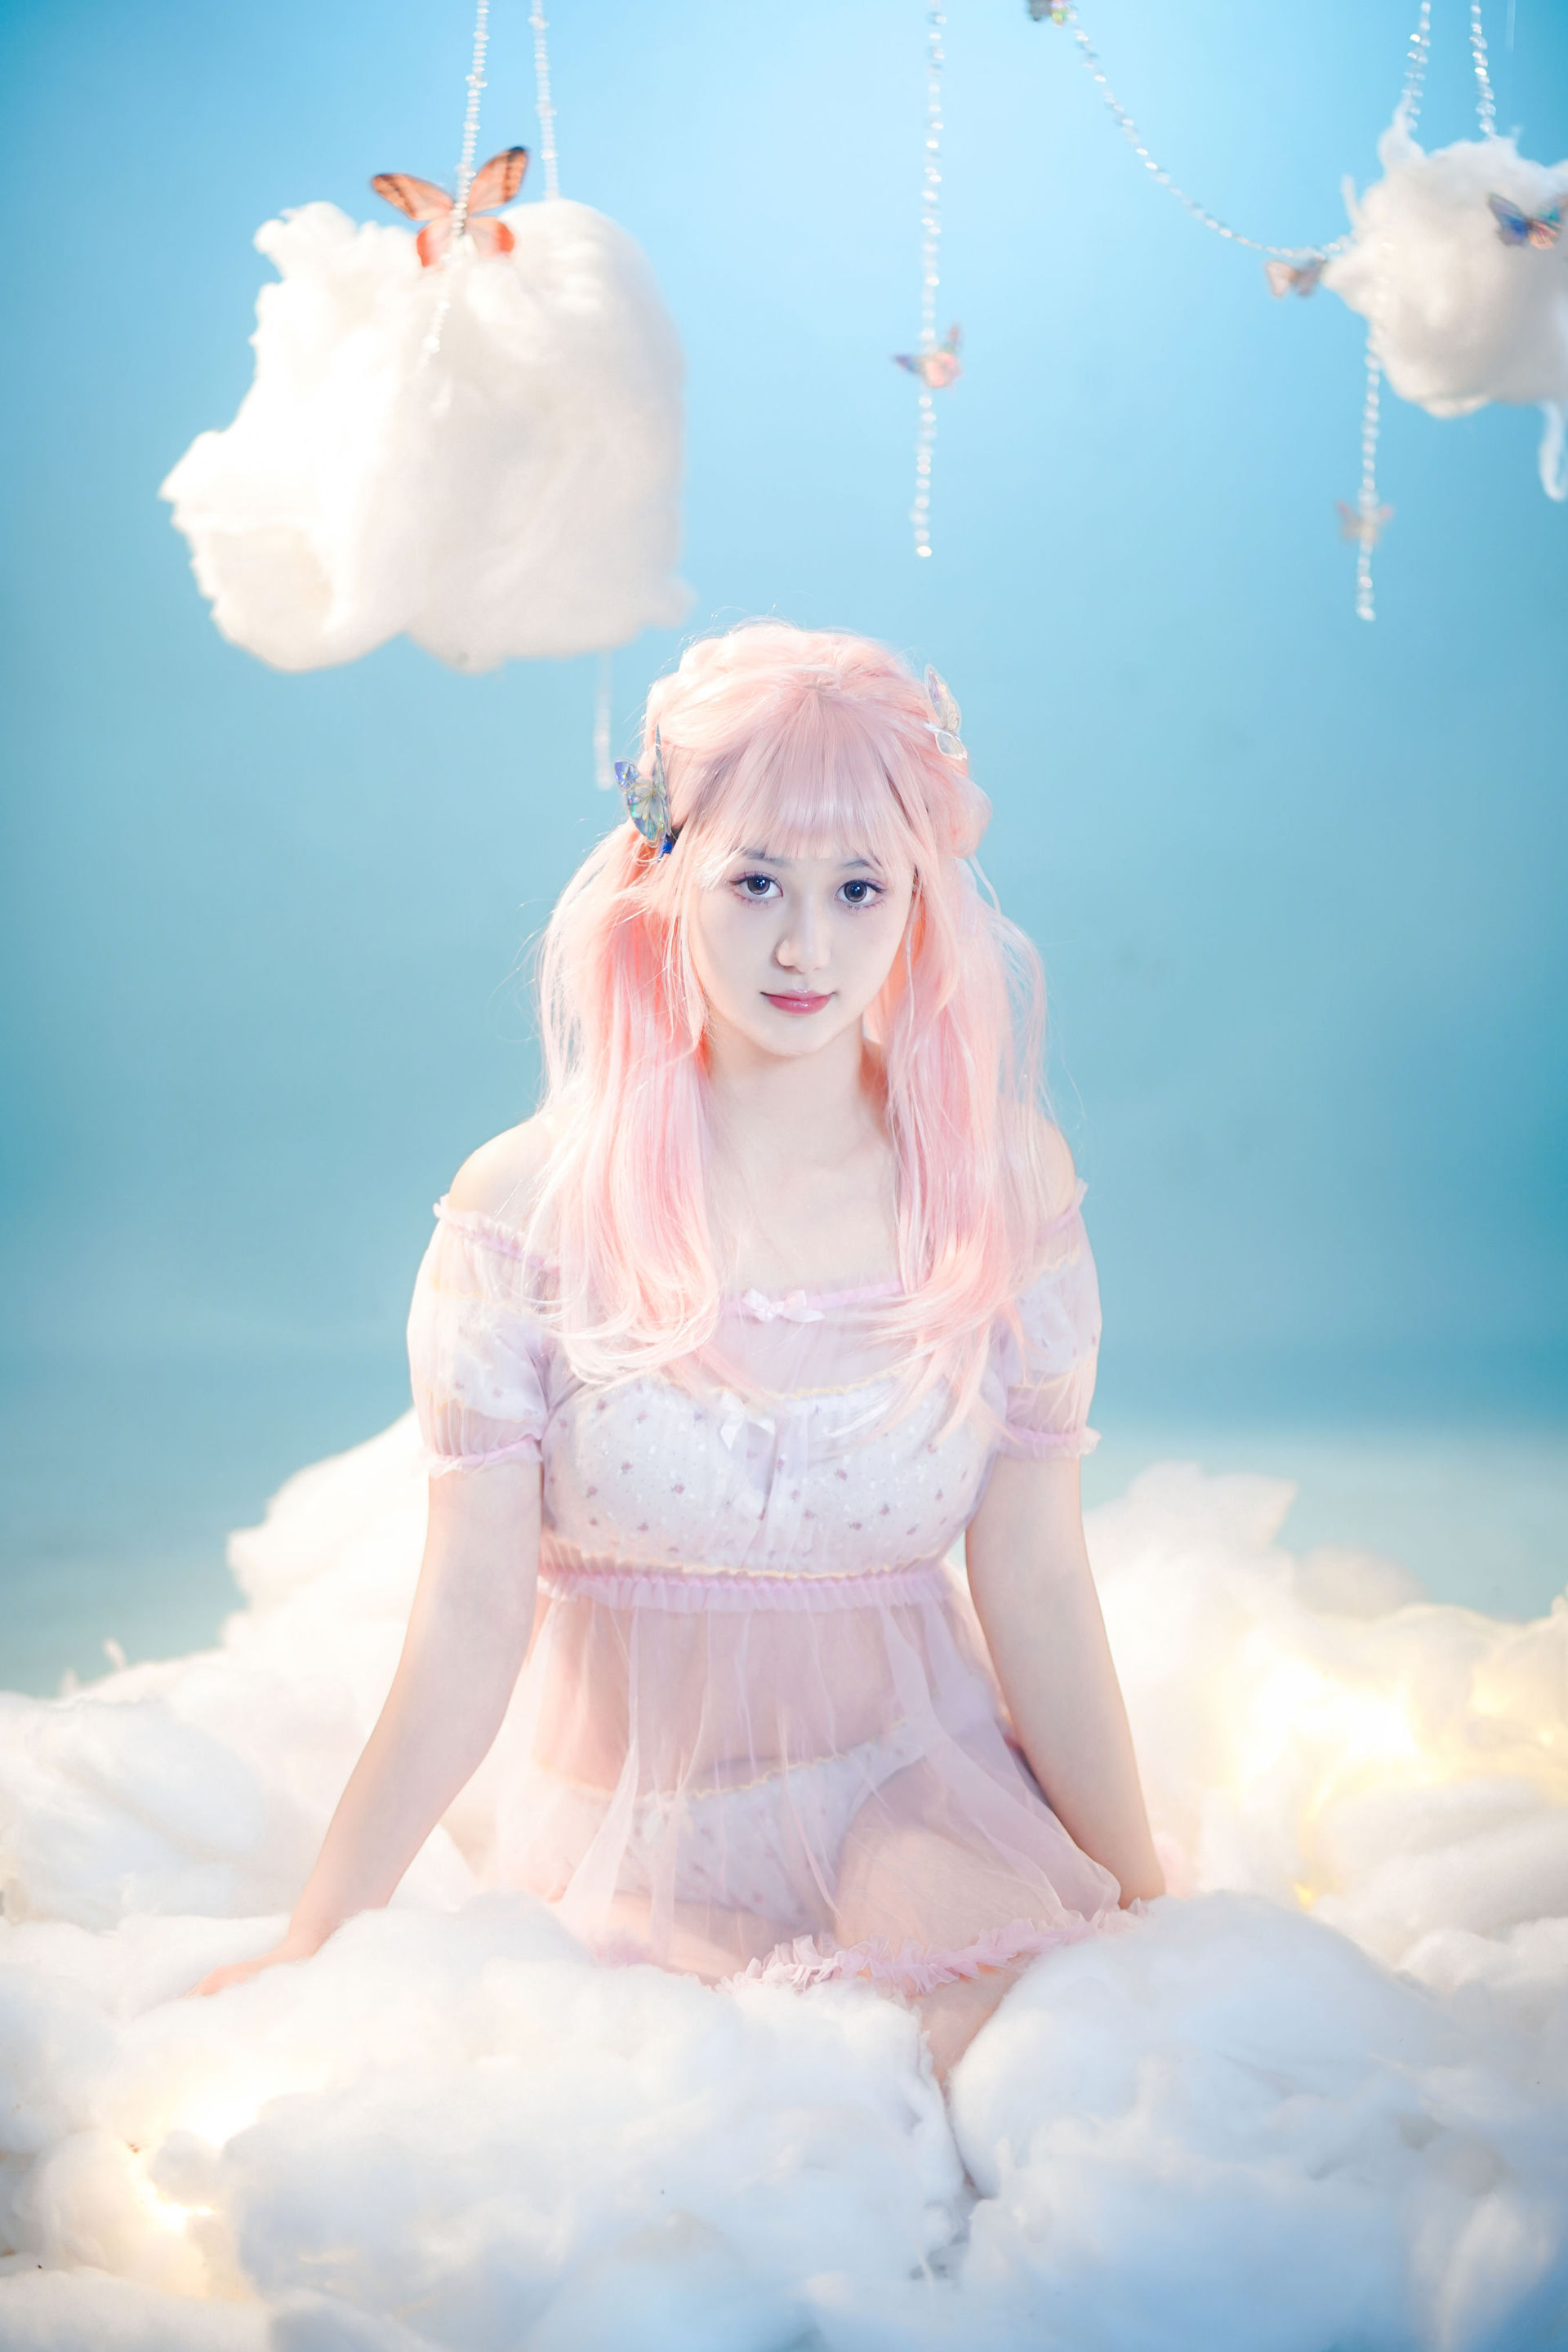 粉色头发的少女 纯欲 少女 写真 小仙女 精美